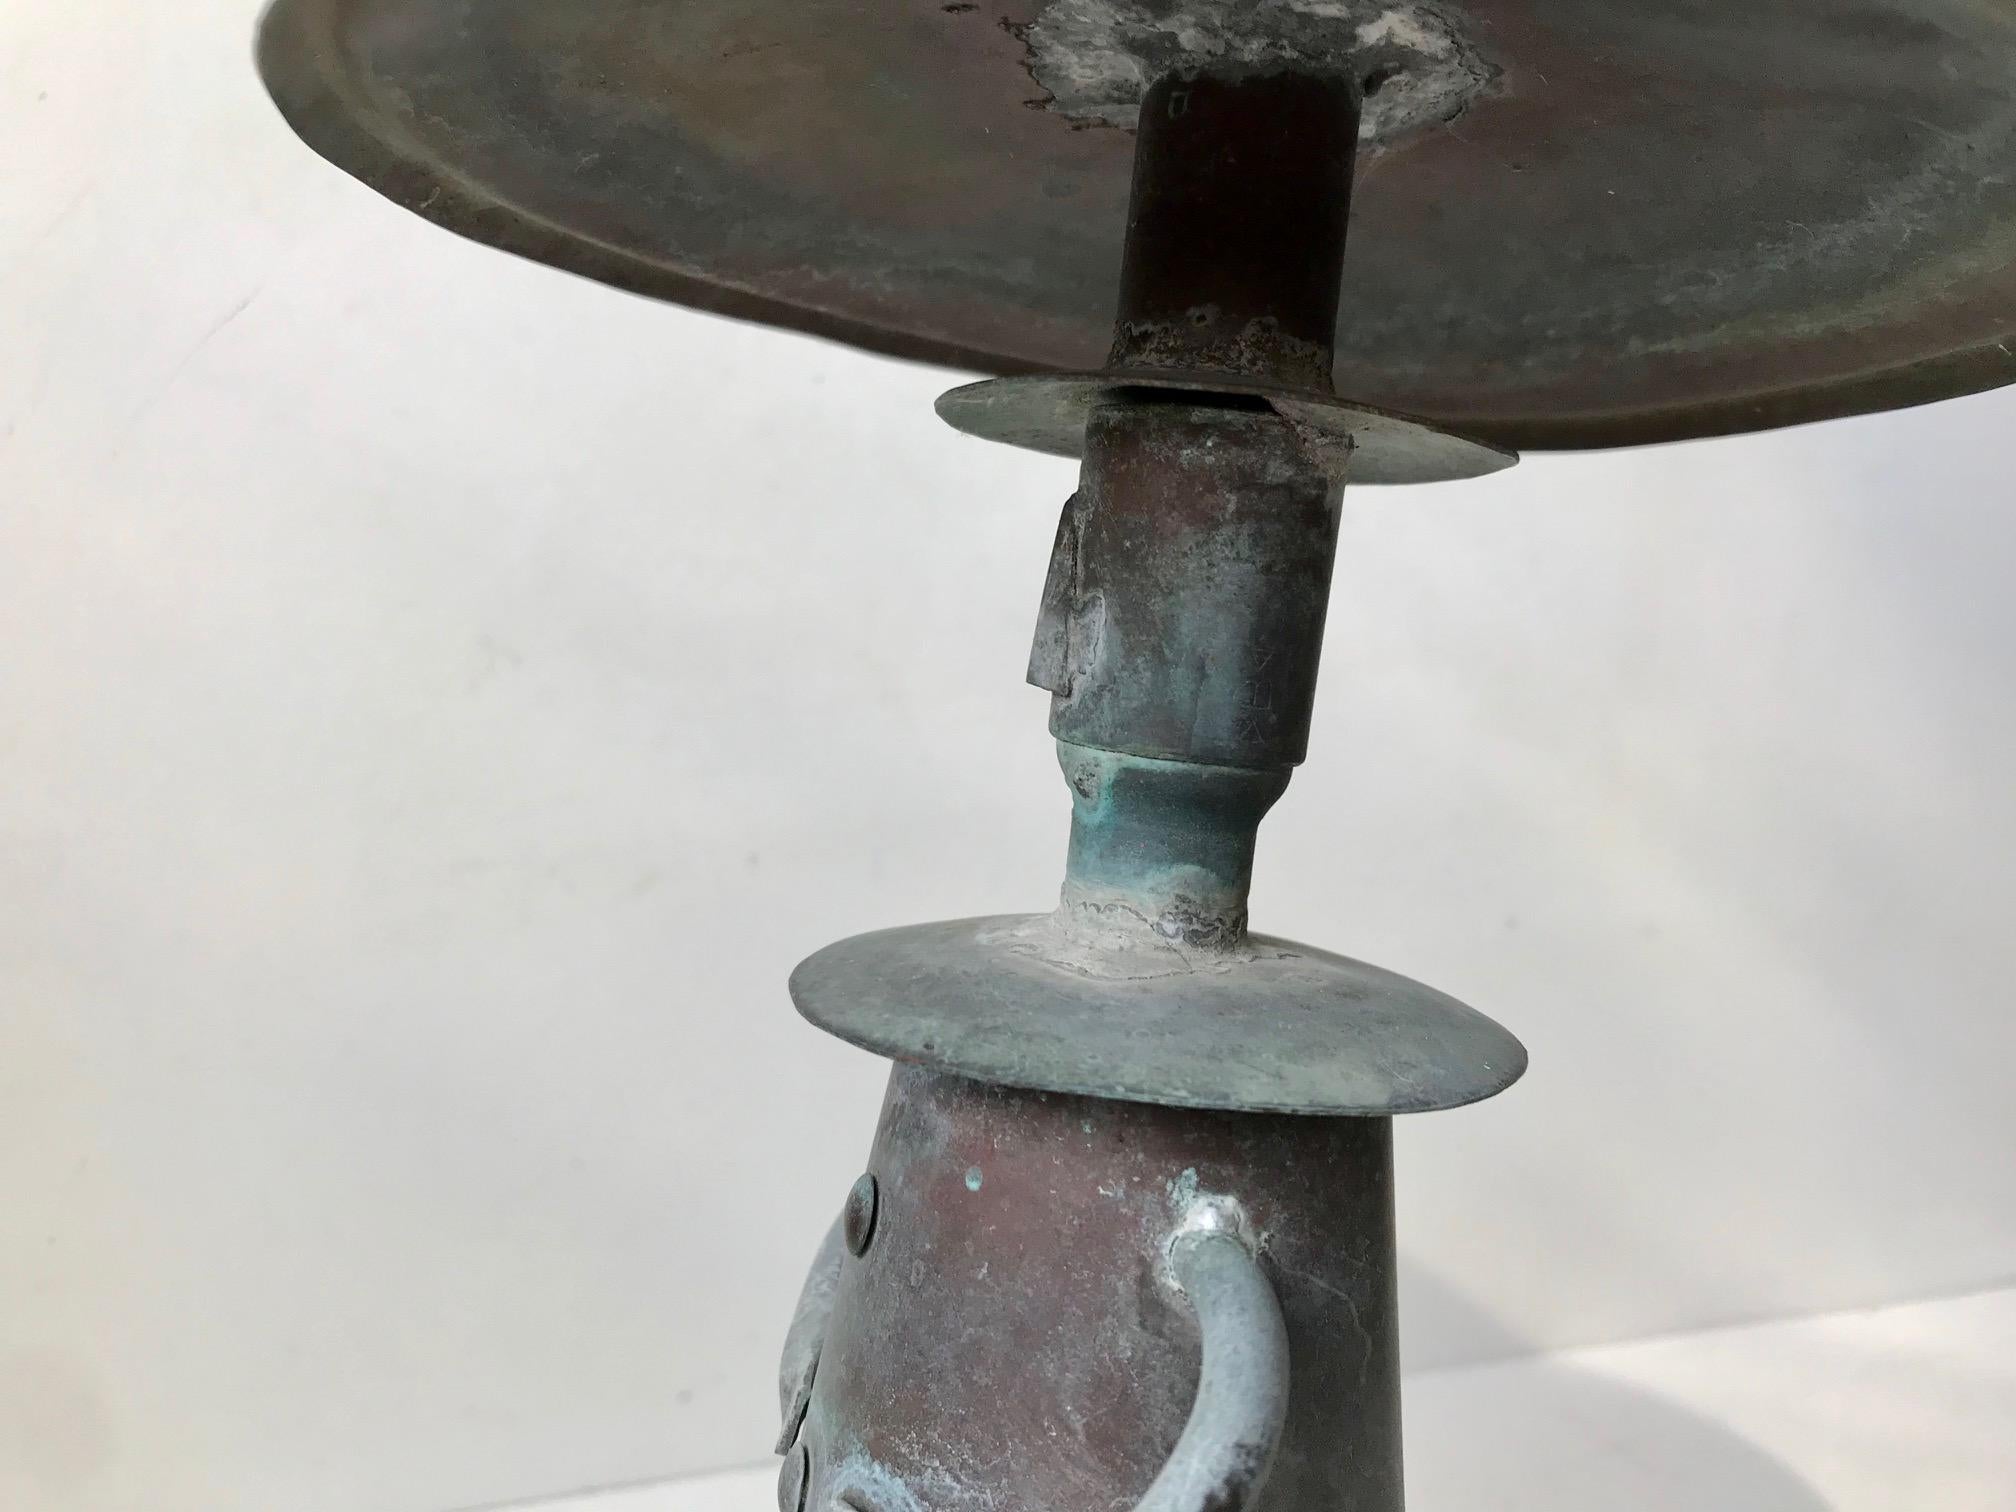 Naiv ausgeführte Wasserfontaine-Figurine aus patiniertem Kupfer. Es ist ein Unikat eines anonymen dänischen Bildhauers/Künstlers aus den 1970er Jahren. Als wir es fanden, war es als Skulptur ausgestellt. Maße: H: 29 cm, T: 18 cm (Hut).